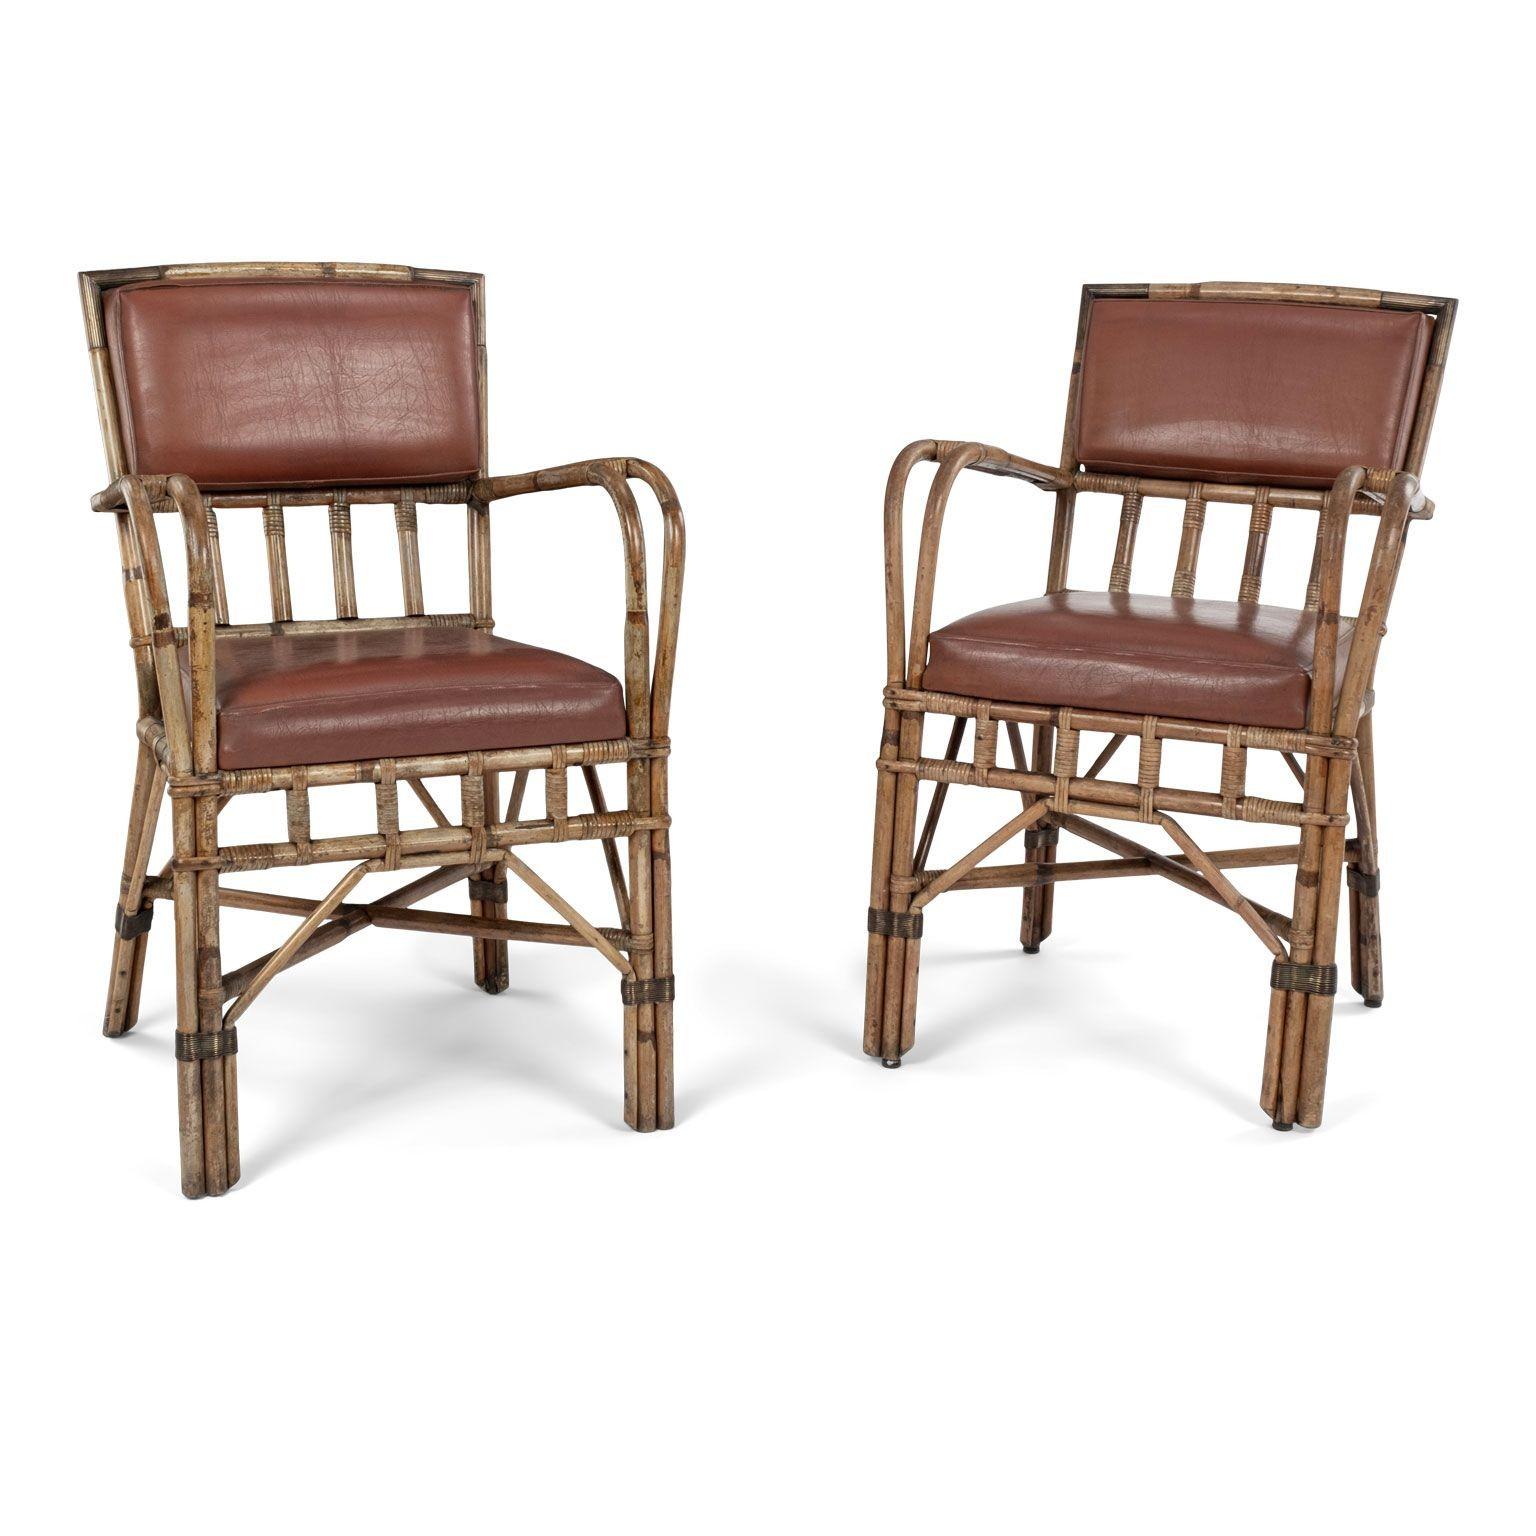 Paar französische Vintage-Bambus-Sessel CIRCA 1965-1984. Verkauft zusammen und preislich $ 6,800 für das Paar.

Hinweis: Regionale Unterschiede in der Luftfeuchtigkeit und im Klima während des Transports können dazu führen, dass antikes und